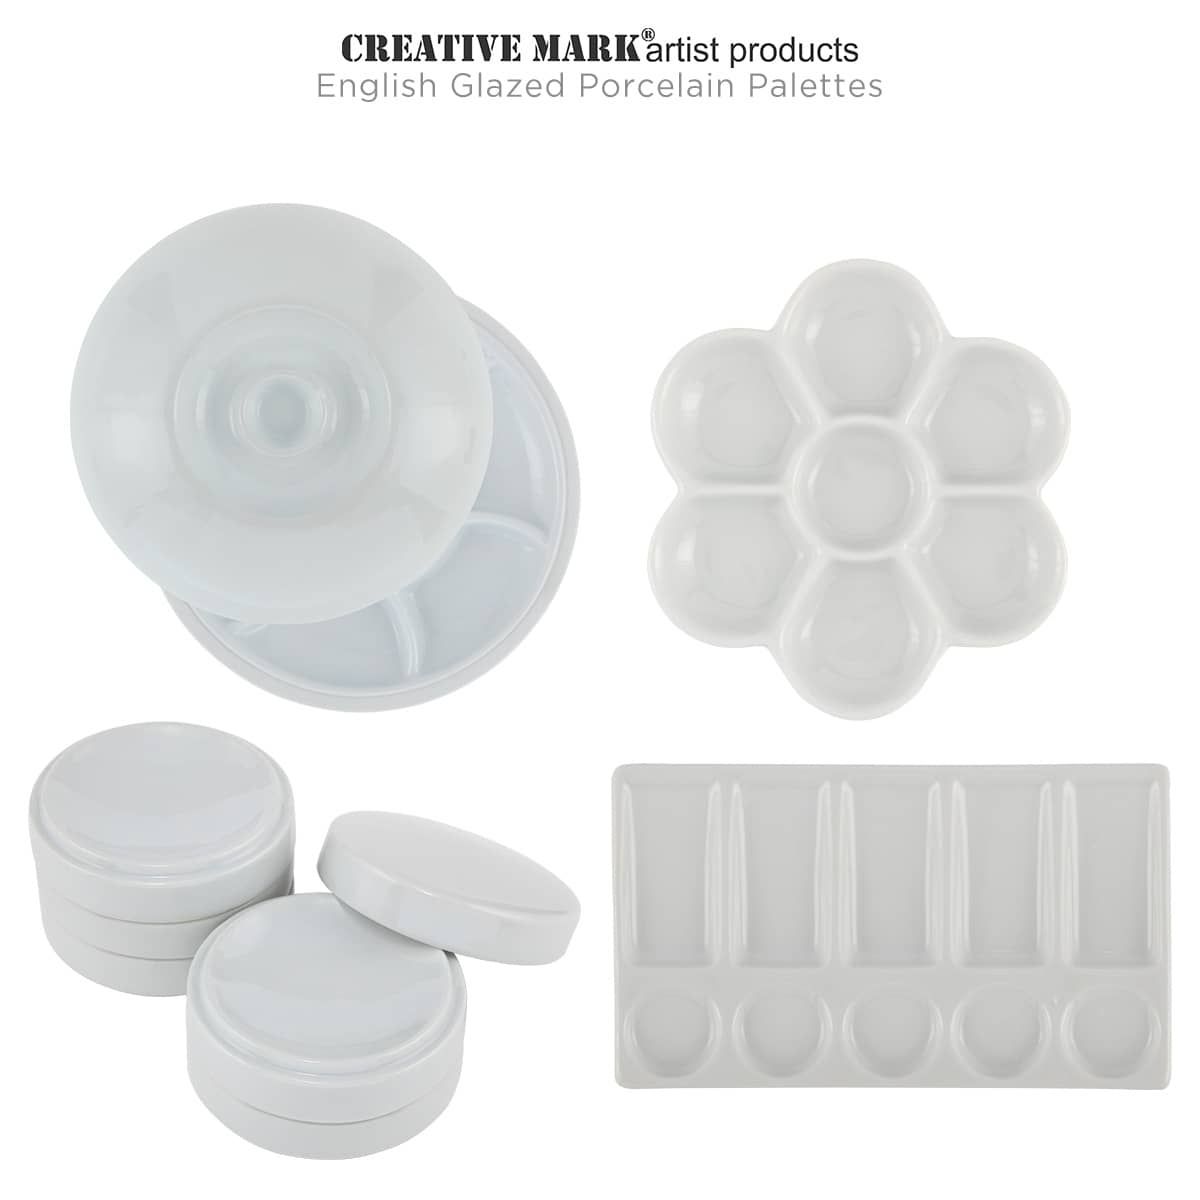 Creative Mark English Glazed Porcelain Palettes